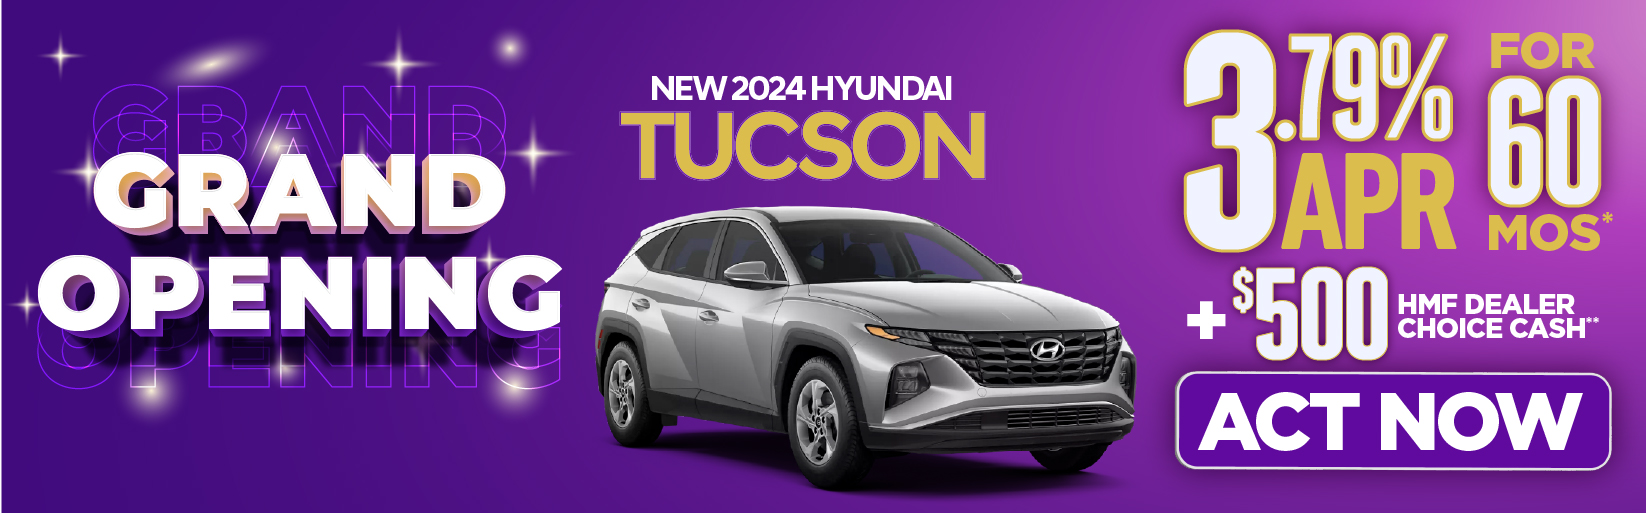 New 2024 Hyundai Tucson - 3.79% APR for 60 months. Plus $500 HMF Dealer Choice Cash - Act Now